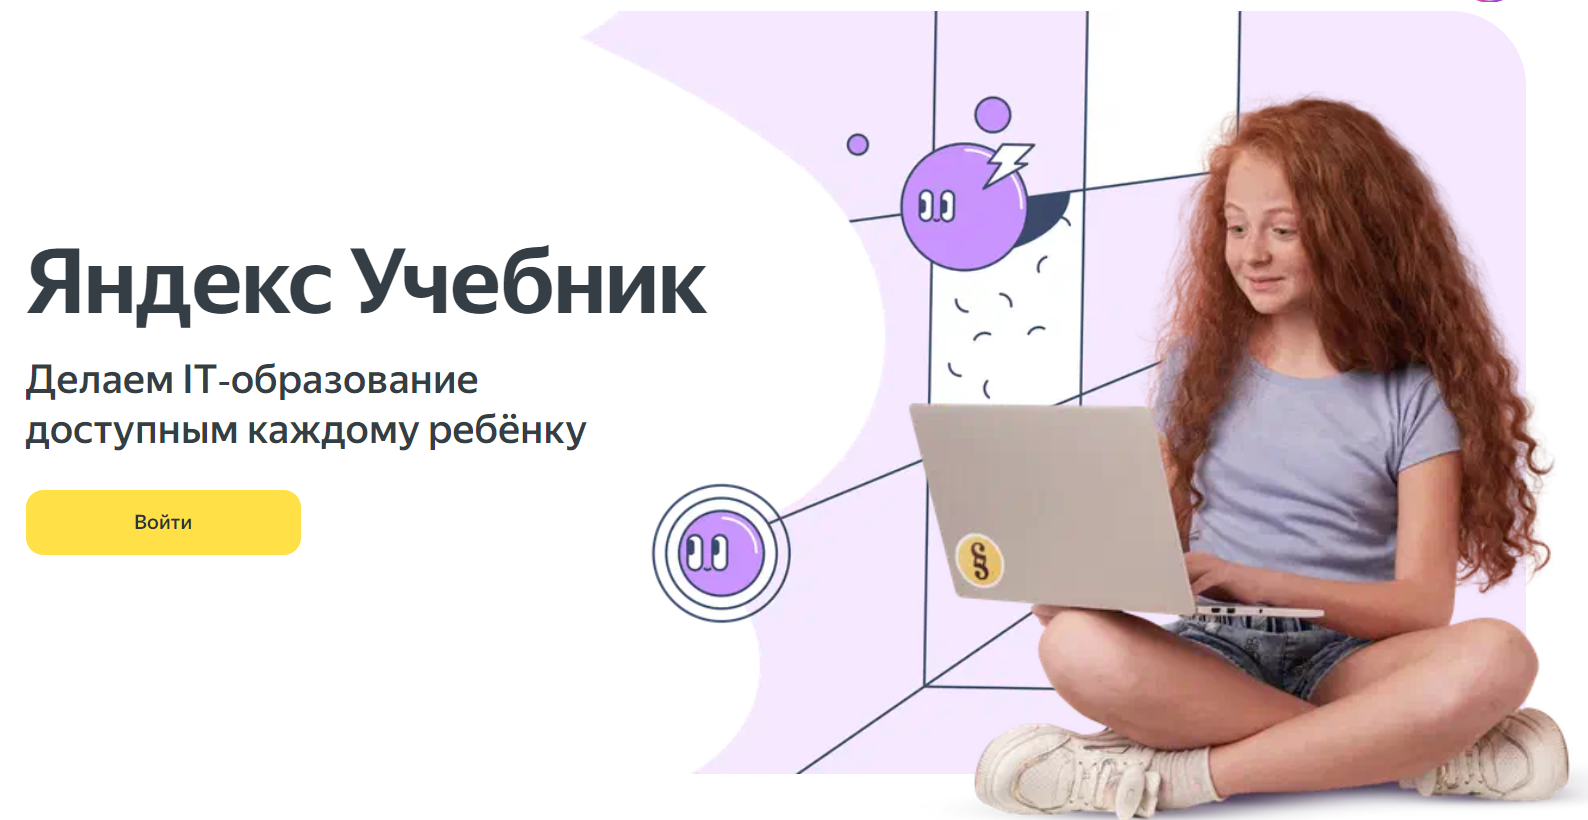 «Объясни термин» — новая функция от Яндекс Учебника.